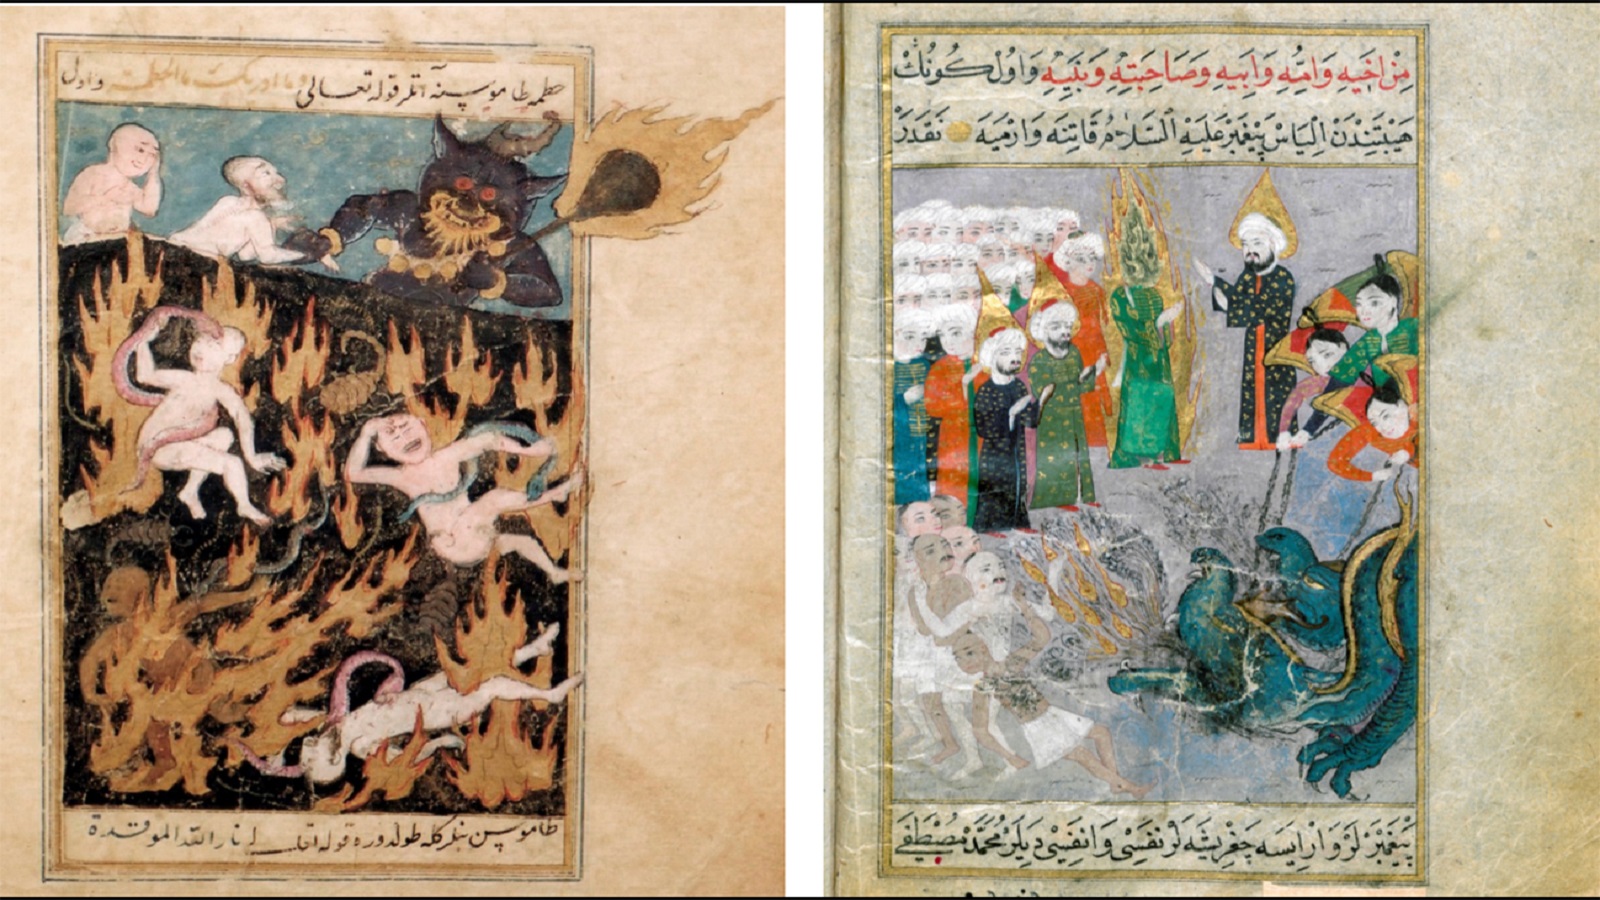 منمنمتان من مخطوط عثماني بعنوان "أحوال القيامة"، القرن السادس عشر، مكتبة برلين.